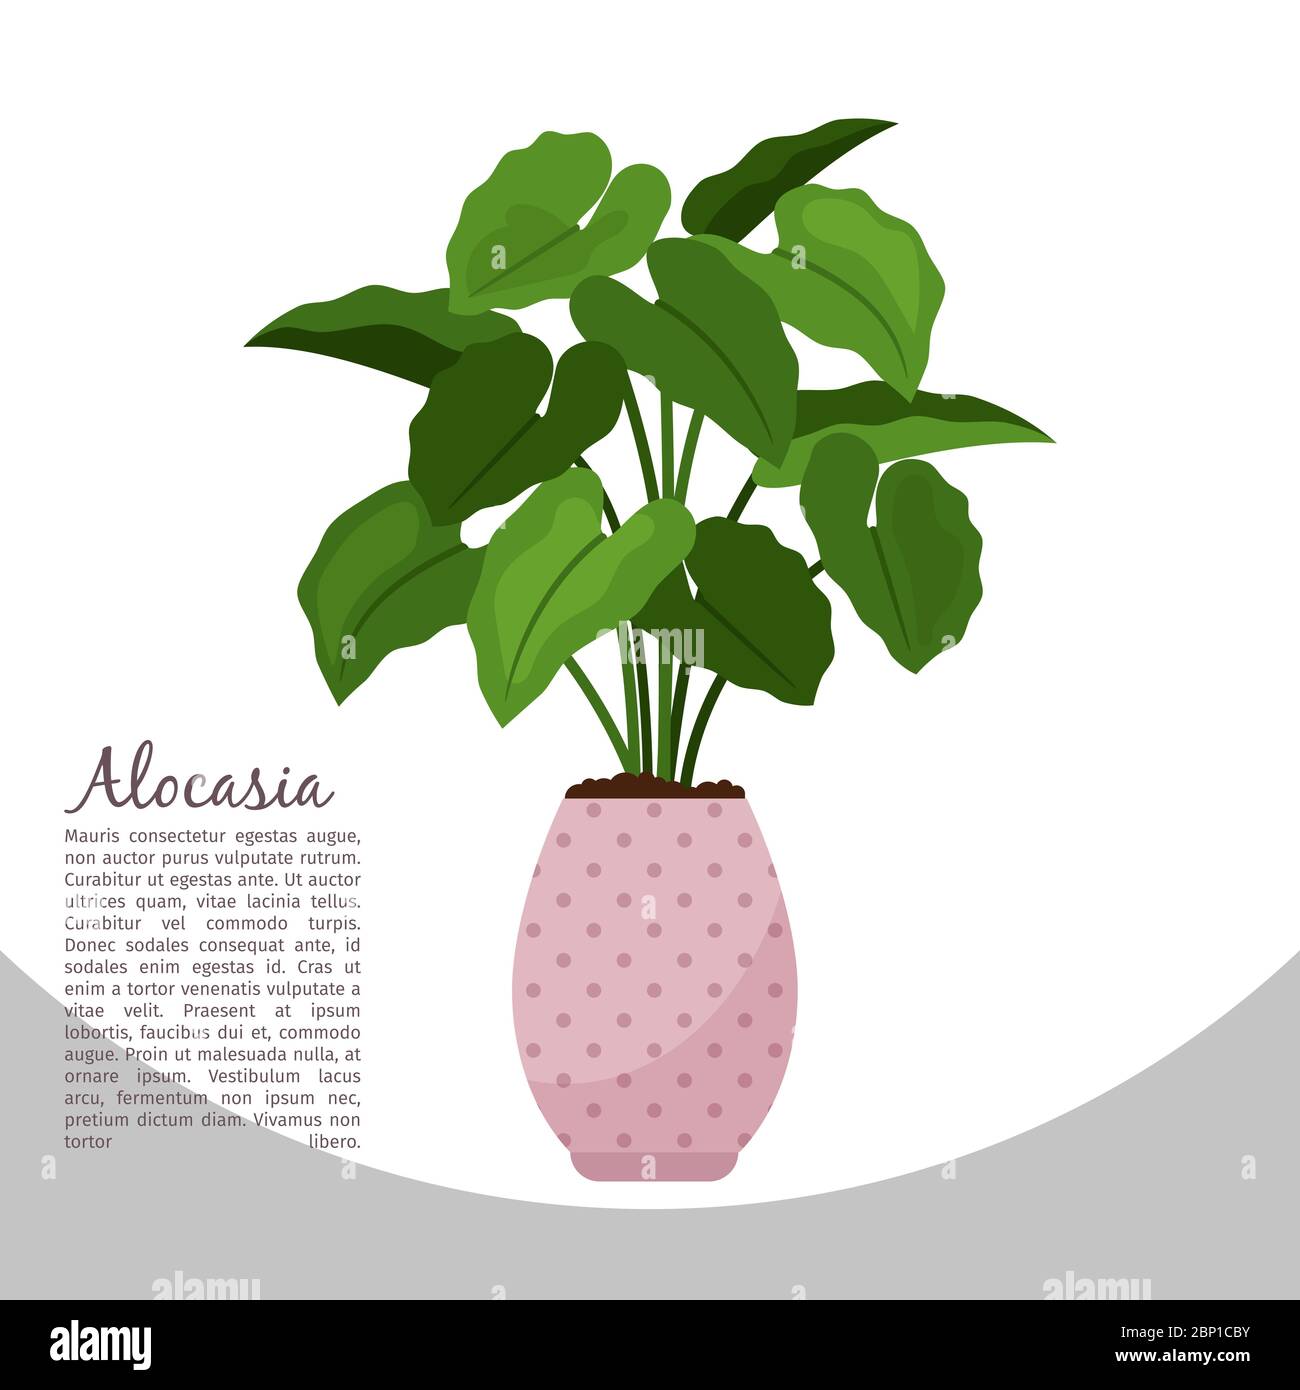 Plante intérieure Alocasia dans le modèle de bannière pot, illustration vectorielle Illustration de Vecteur